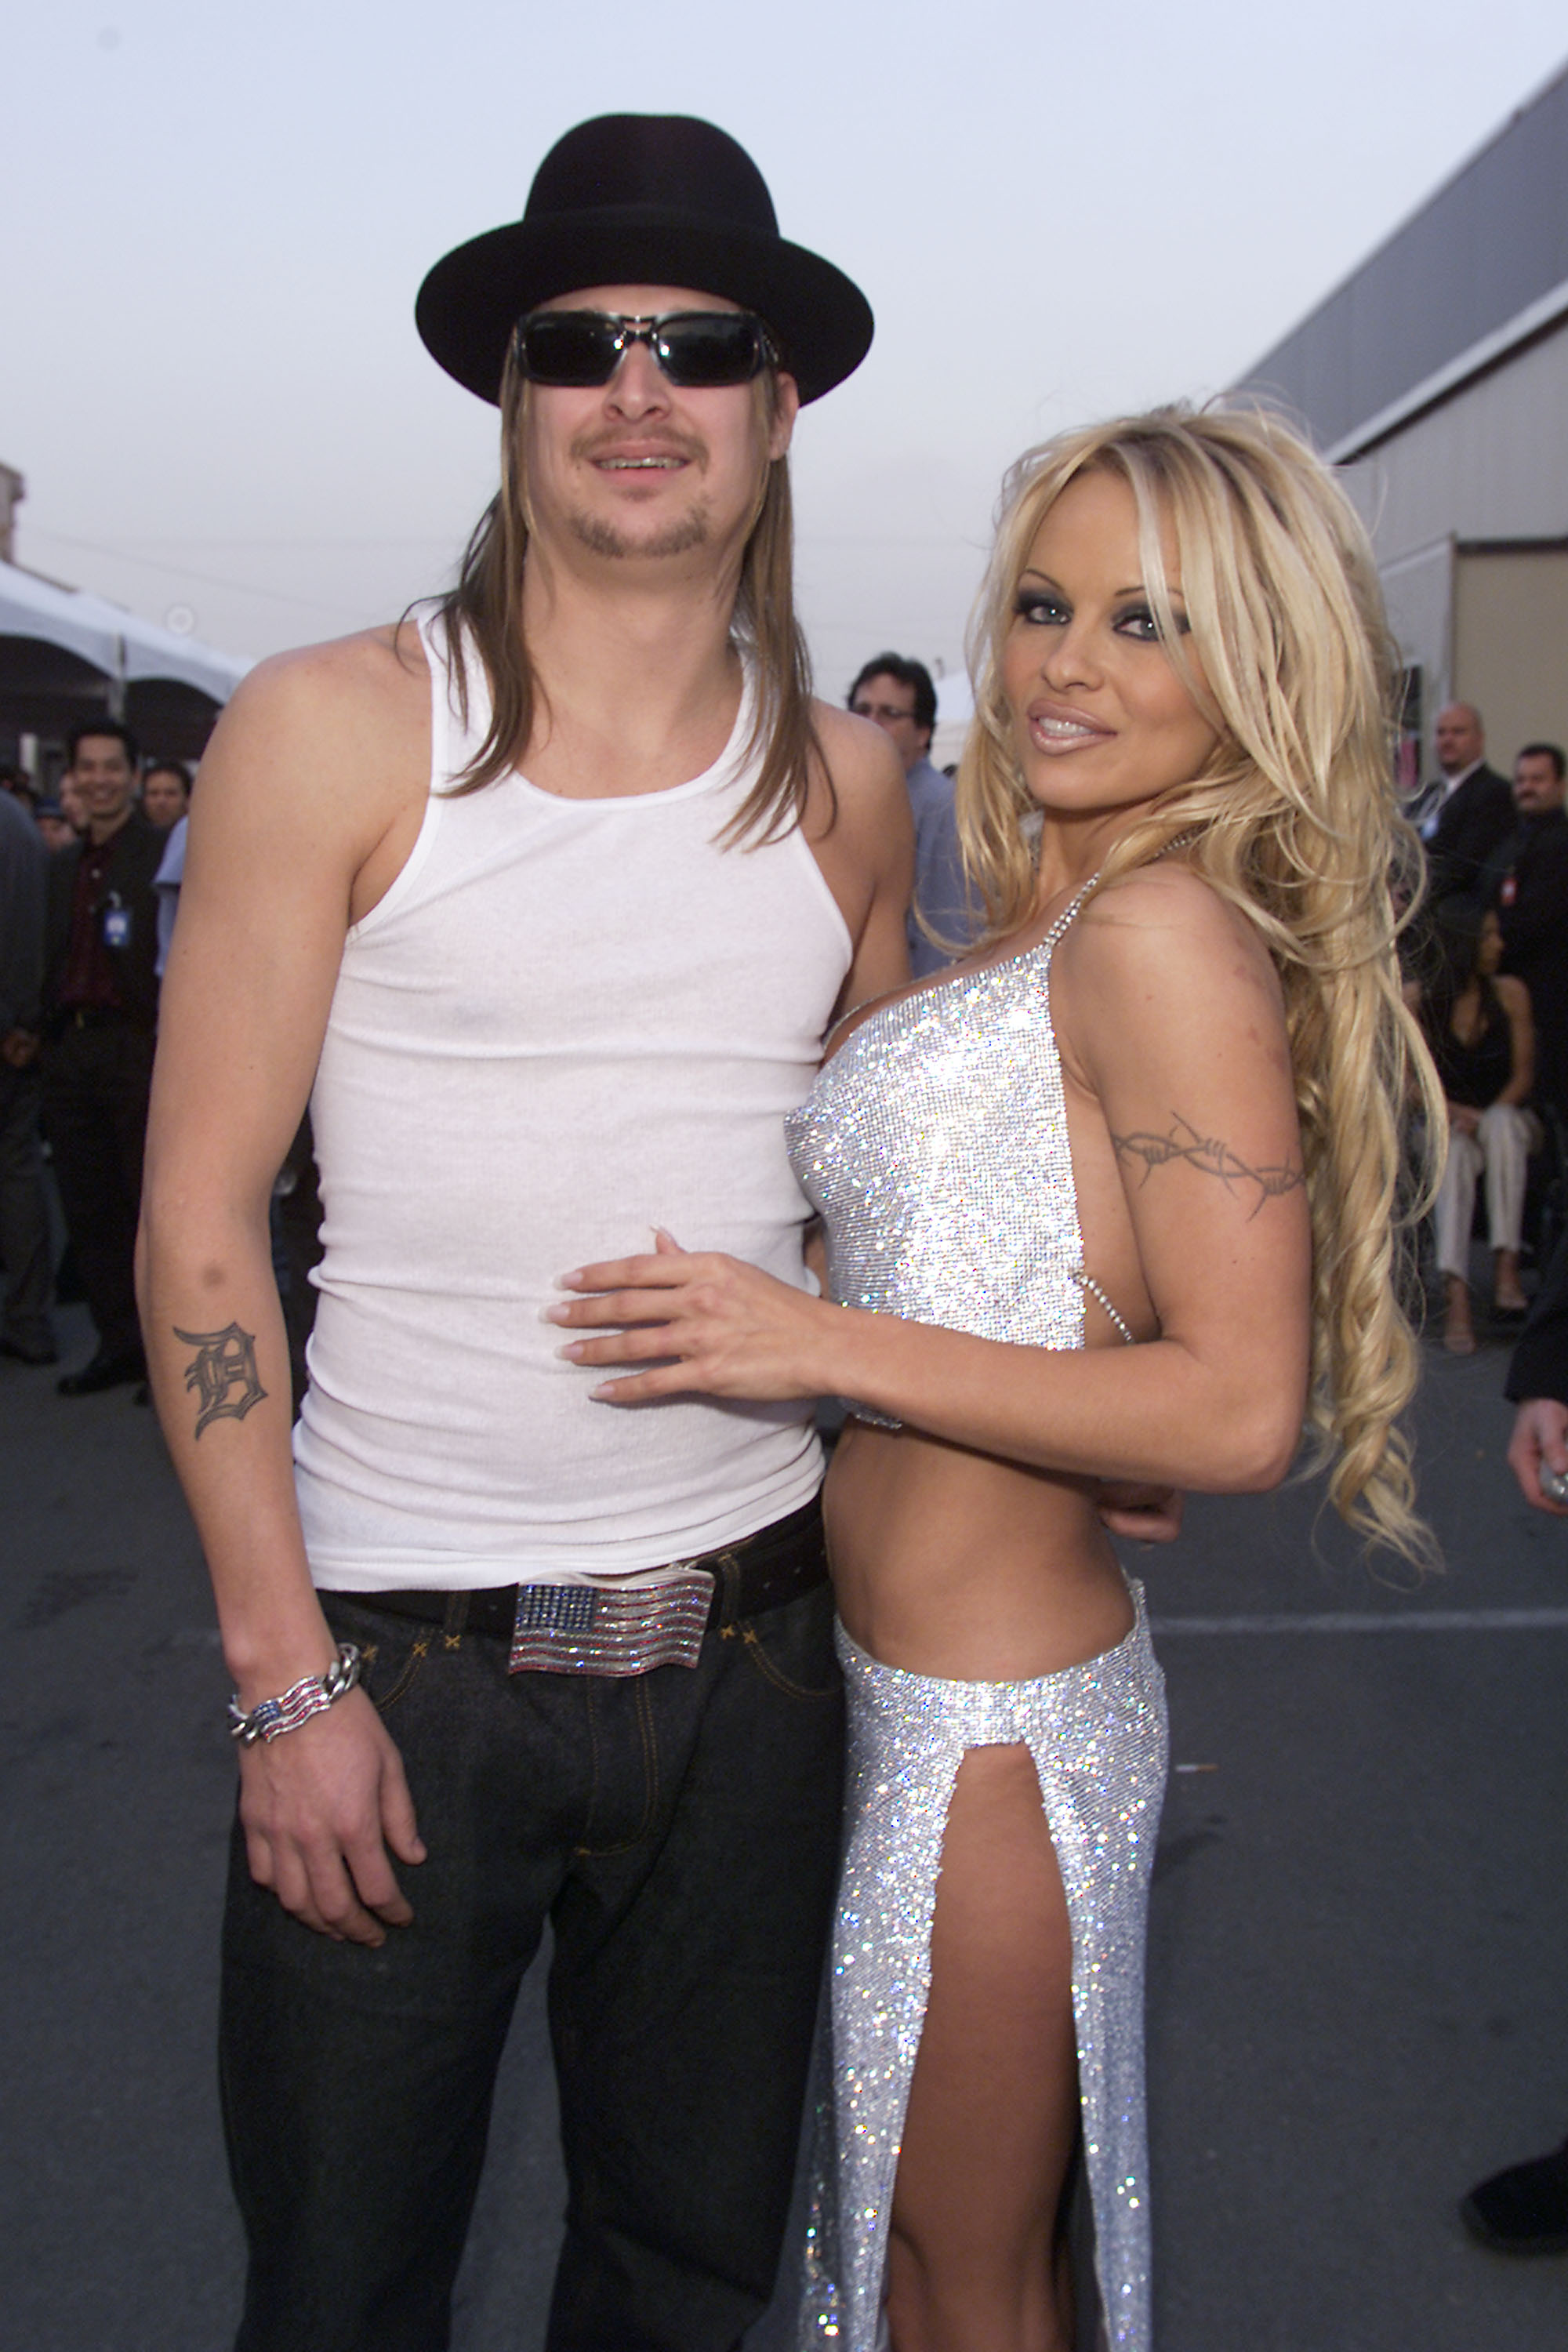 La rubia posando junto al cantante Kid Rock, en los American Music Awards en Los Angeles, a quien también le dio el si. (Foto de Frank Micelotta/ABC/ImageDirect